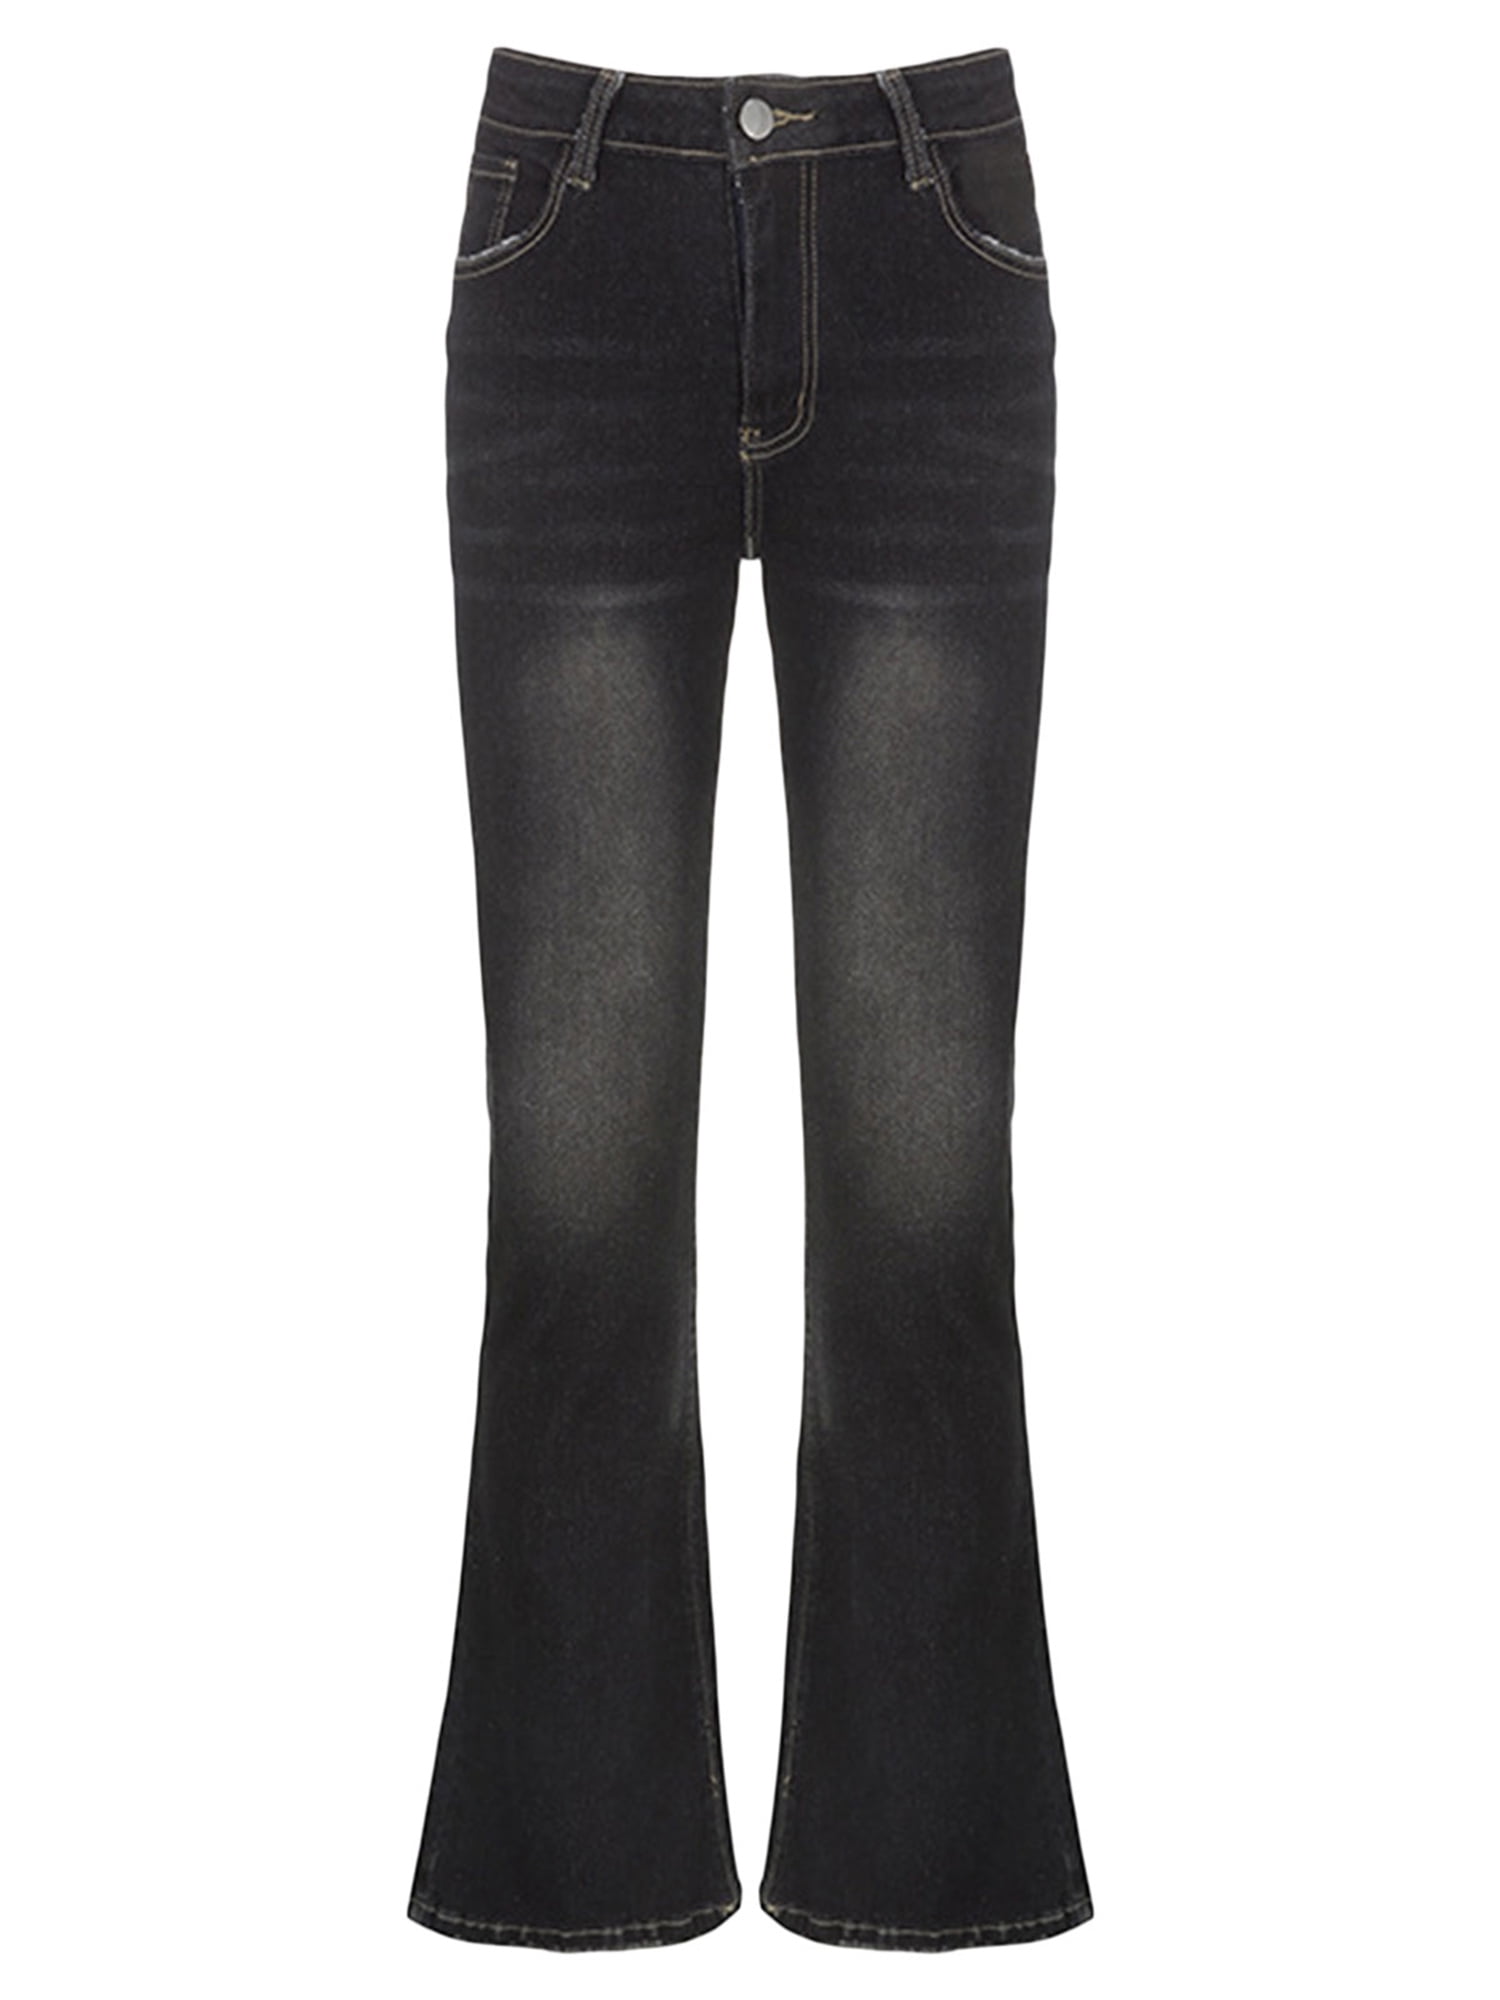 Jeans for Women Vintage Black Denim Flare Pants Streetwear High Waist Slim  Trouser Harajuku Y2K Pants – the best products in the Joom Geek online store